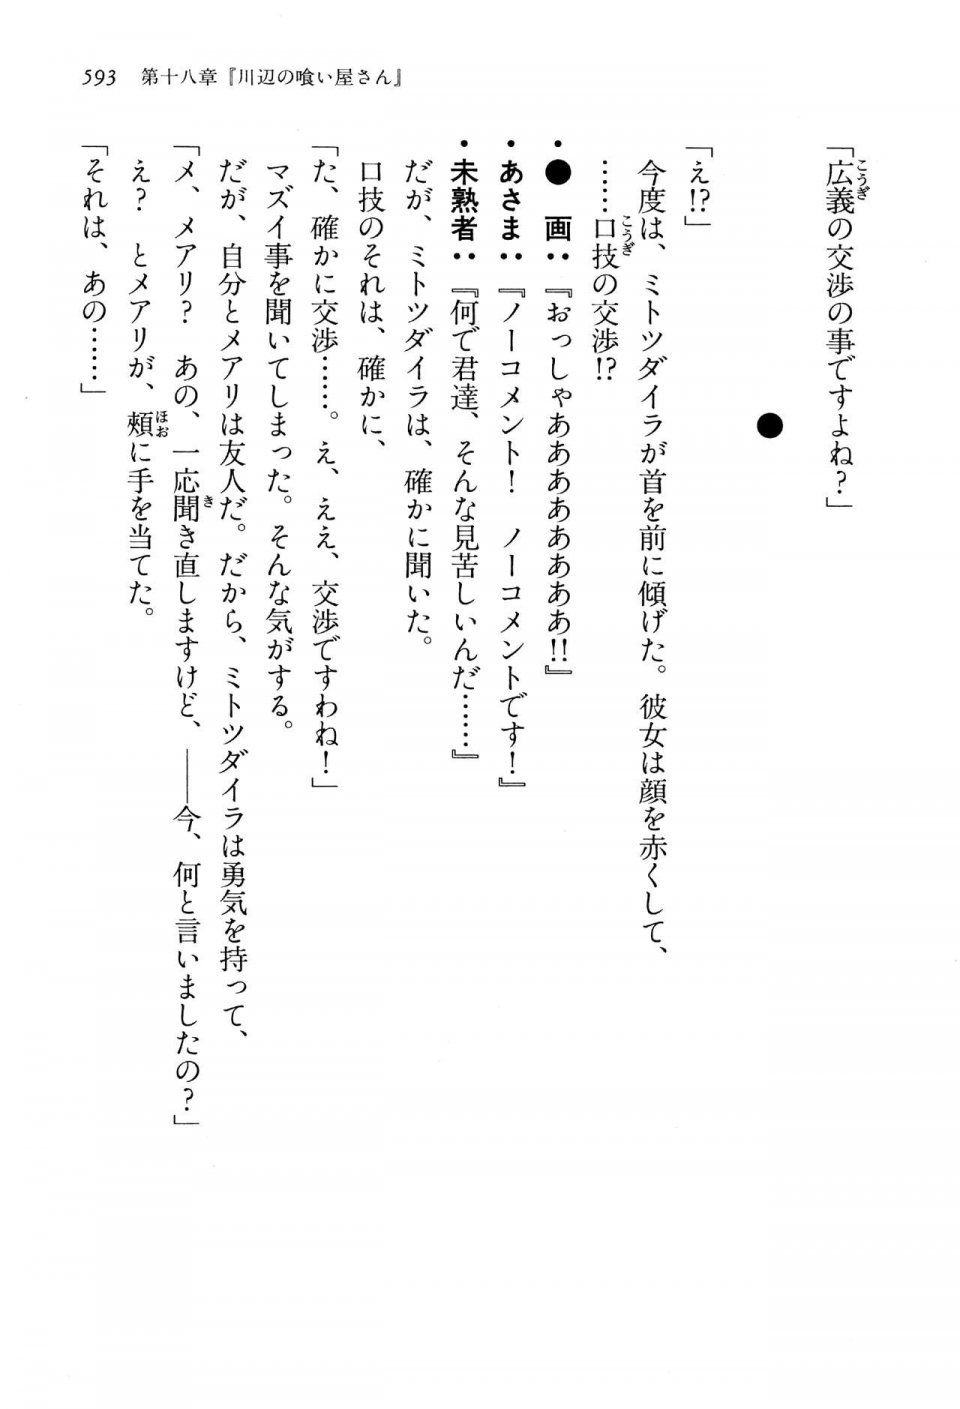 Kyoukai Senjou no Horizon LN Vol 13(6A) - Photo #593